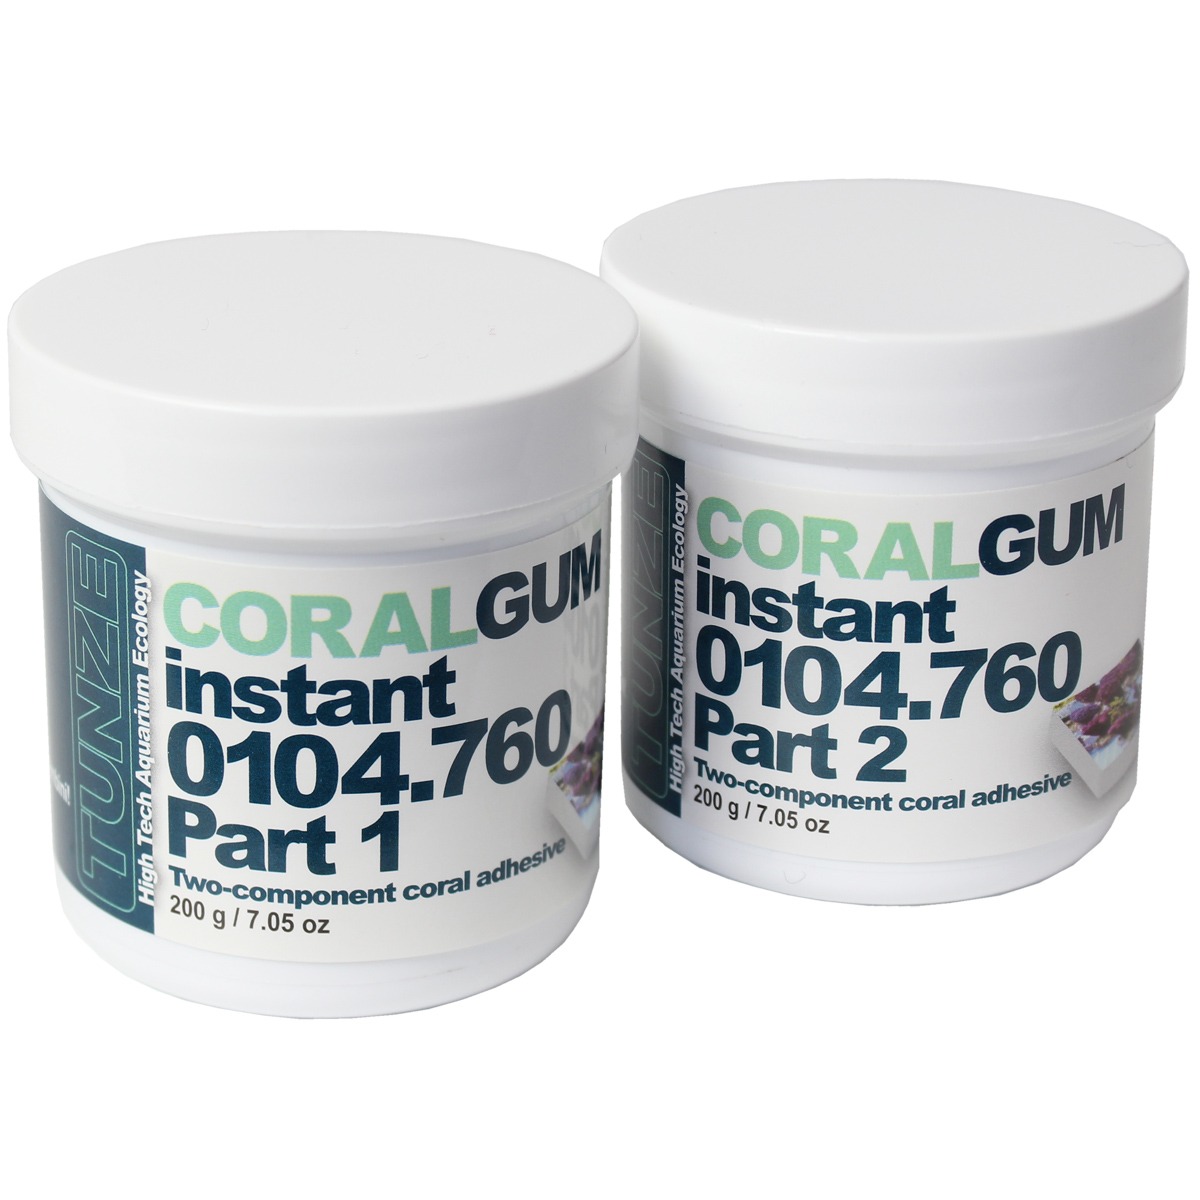 Coral Gum instant